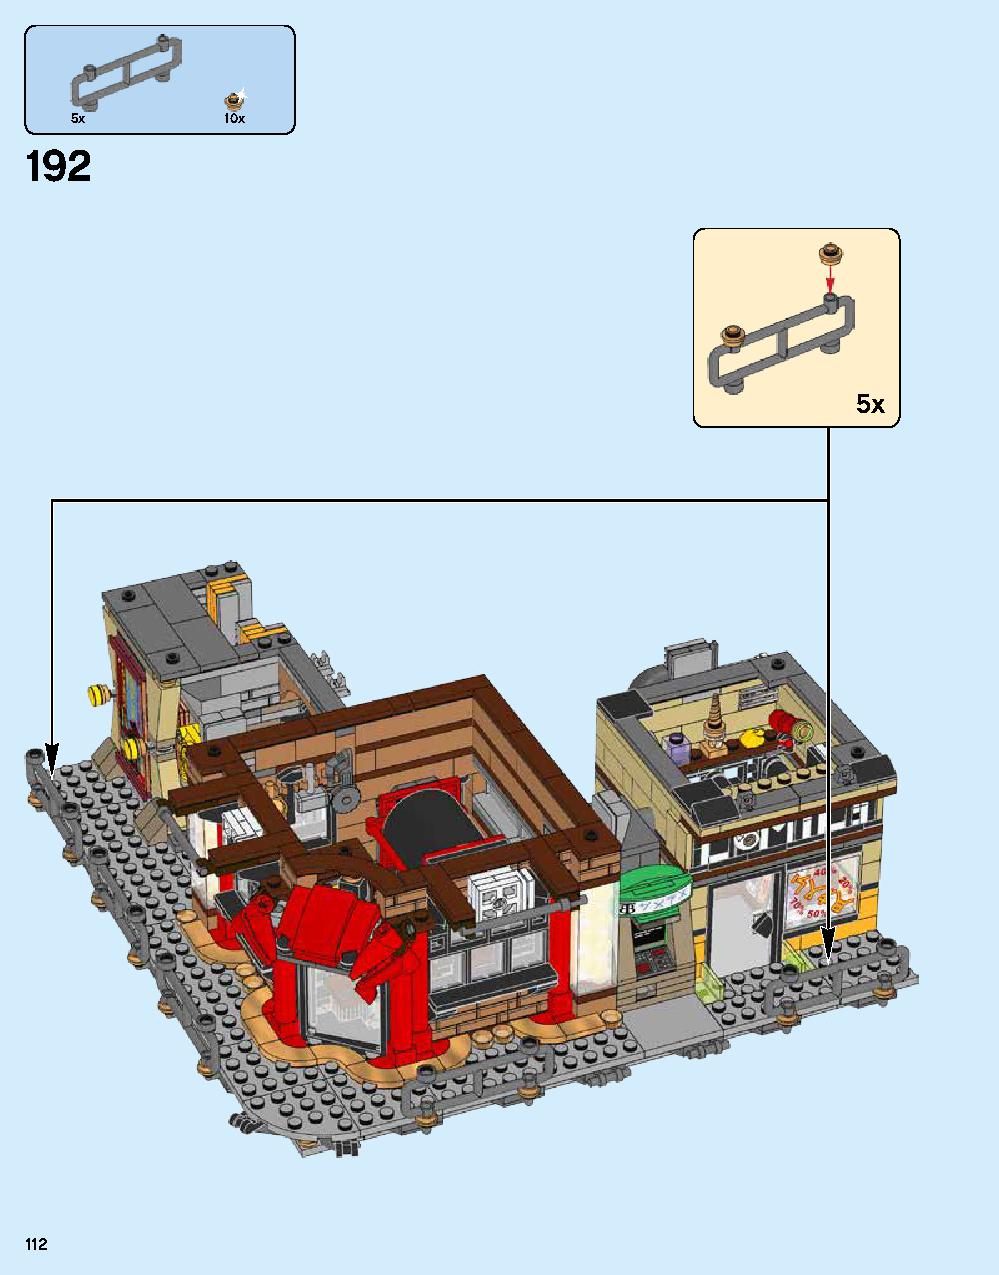 ニンジャゴー シティ 70620 レゴの商品情報 レゴの説明書・組立方法 112 page